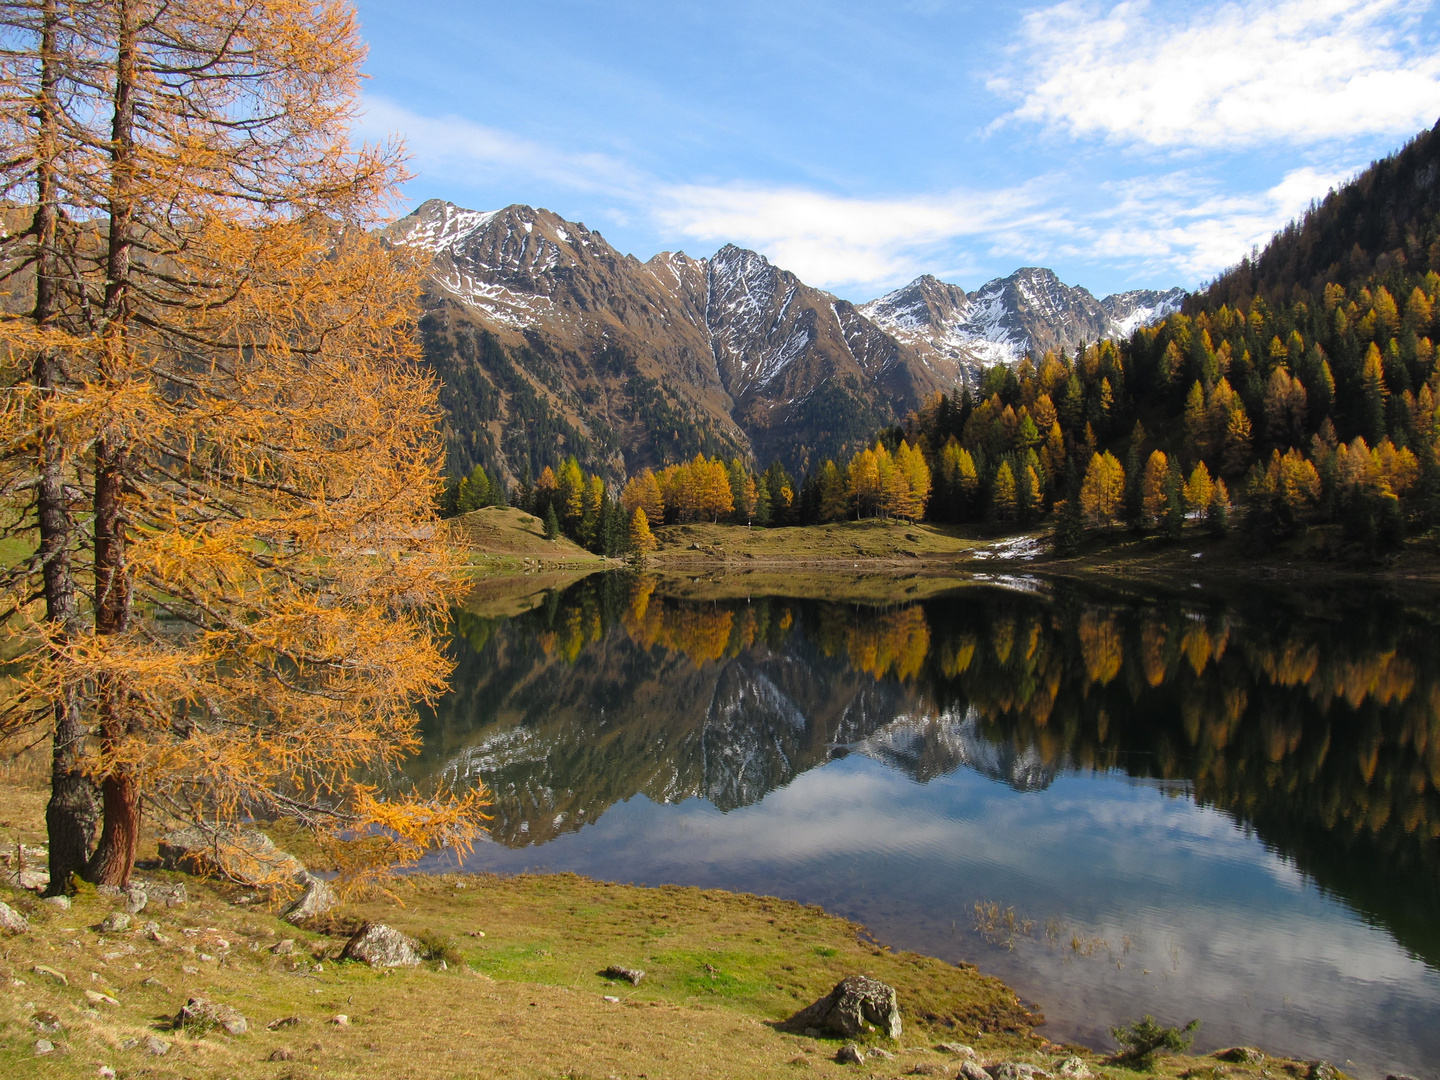 Herbst am Bergsee